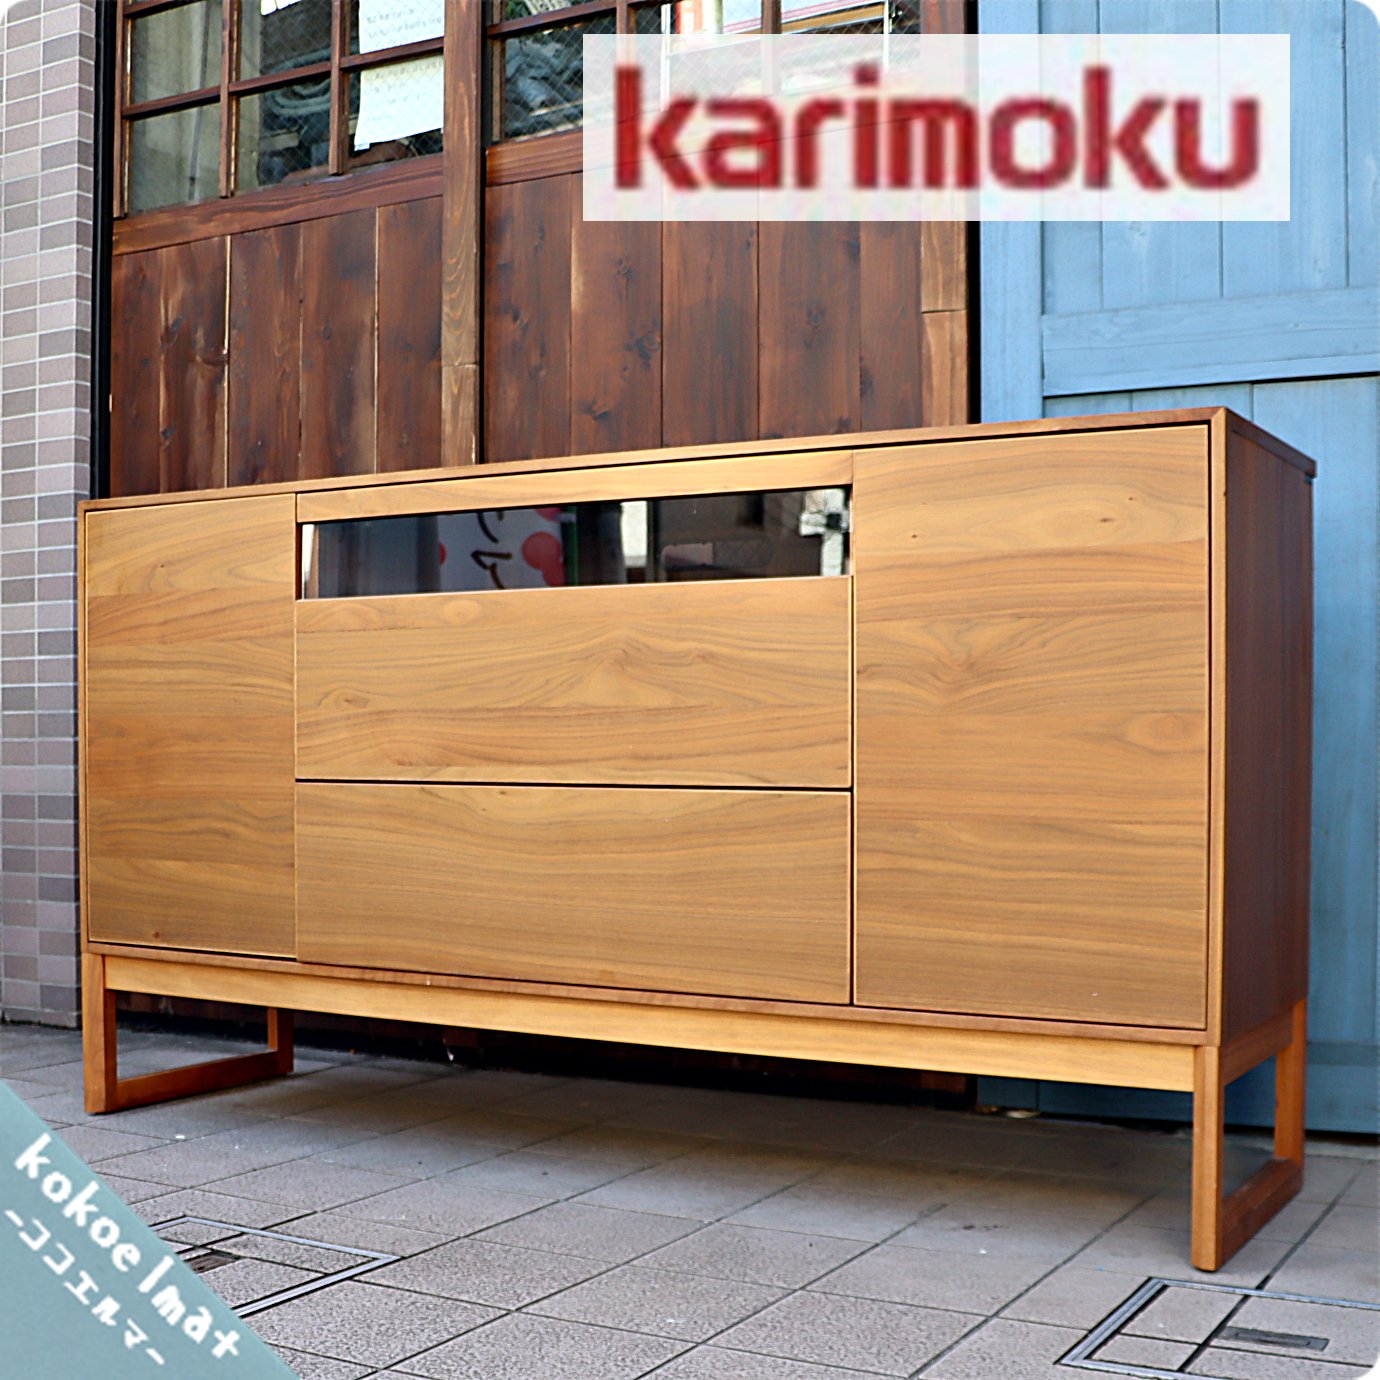 karimoku(カリモク家具) HU5137XRF ウォールナット材 サイドボードです 